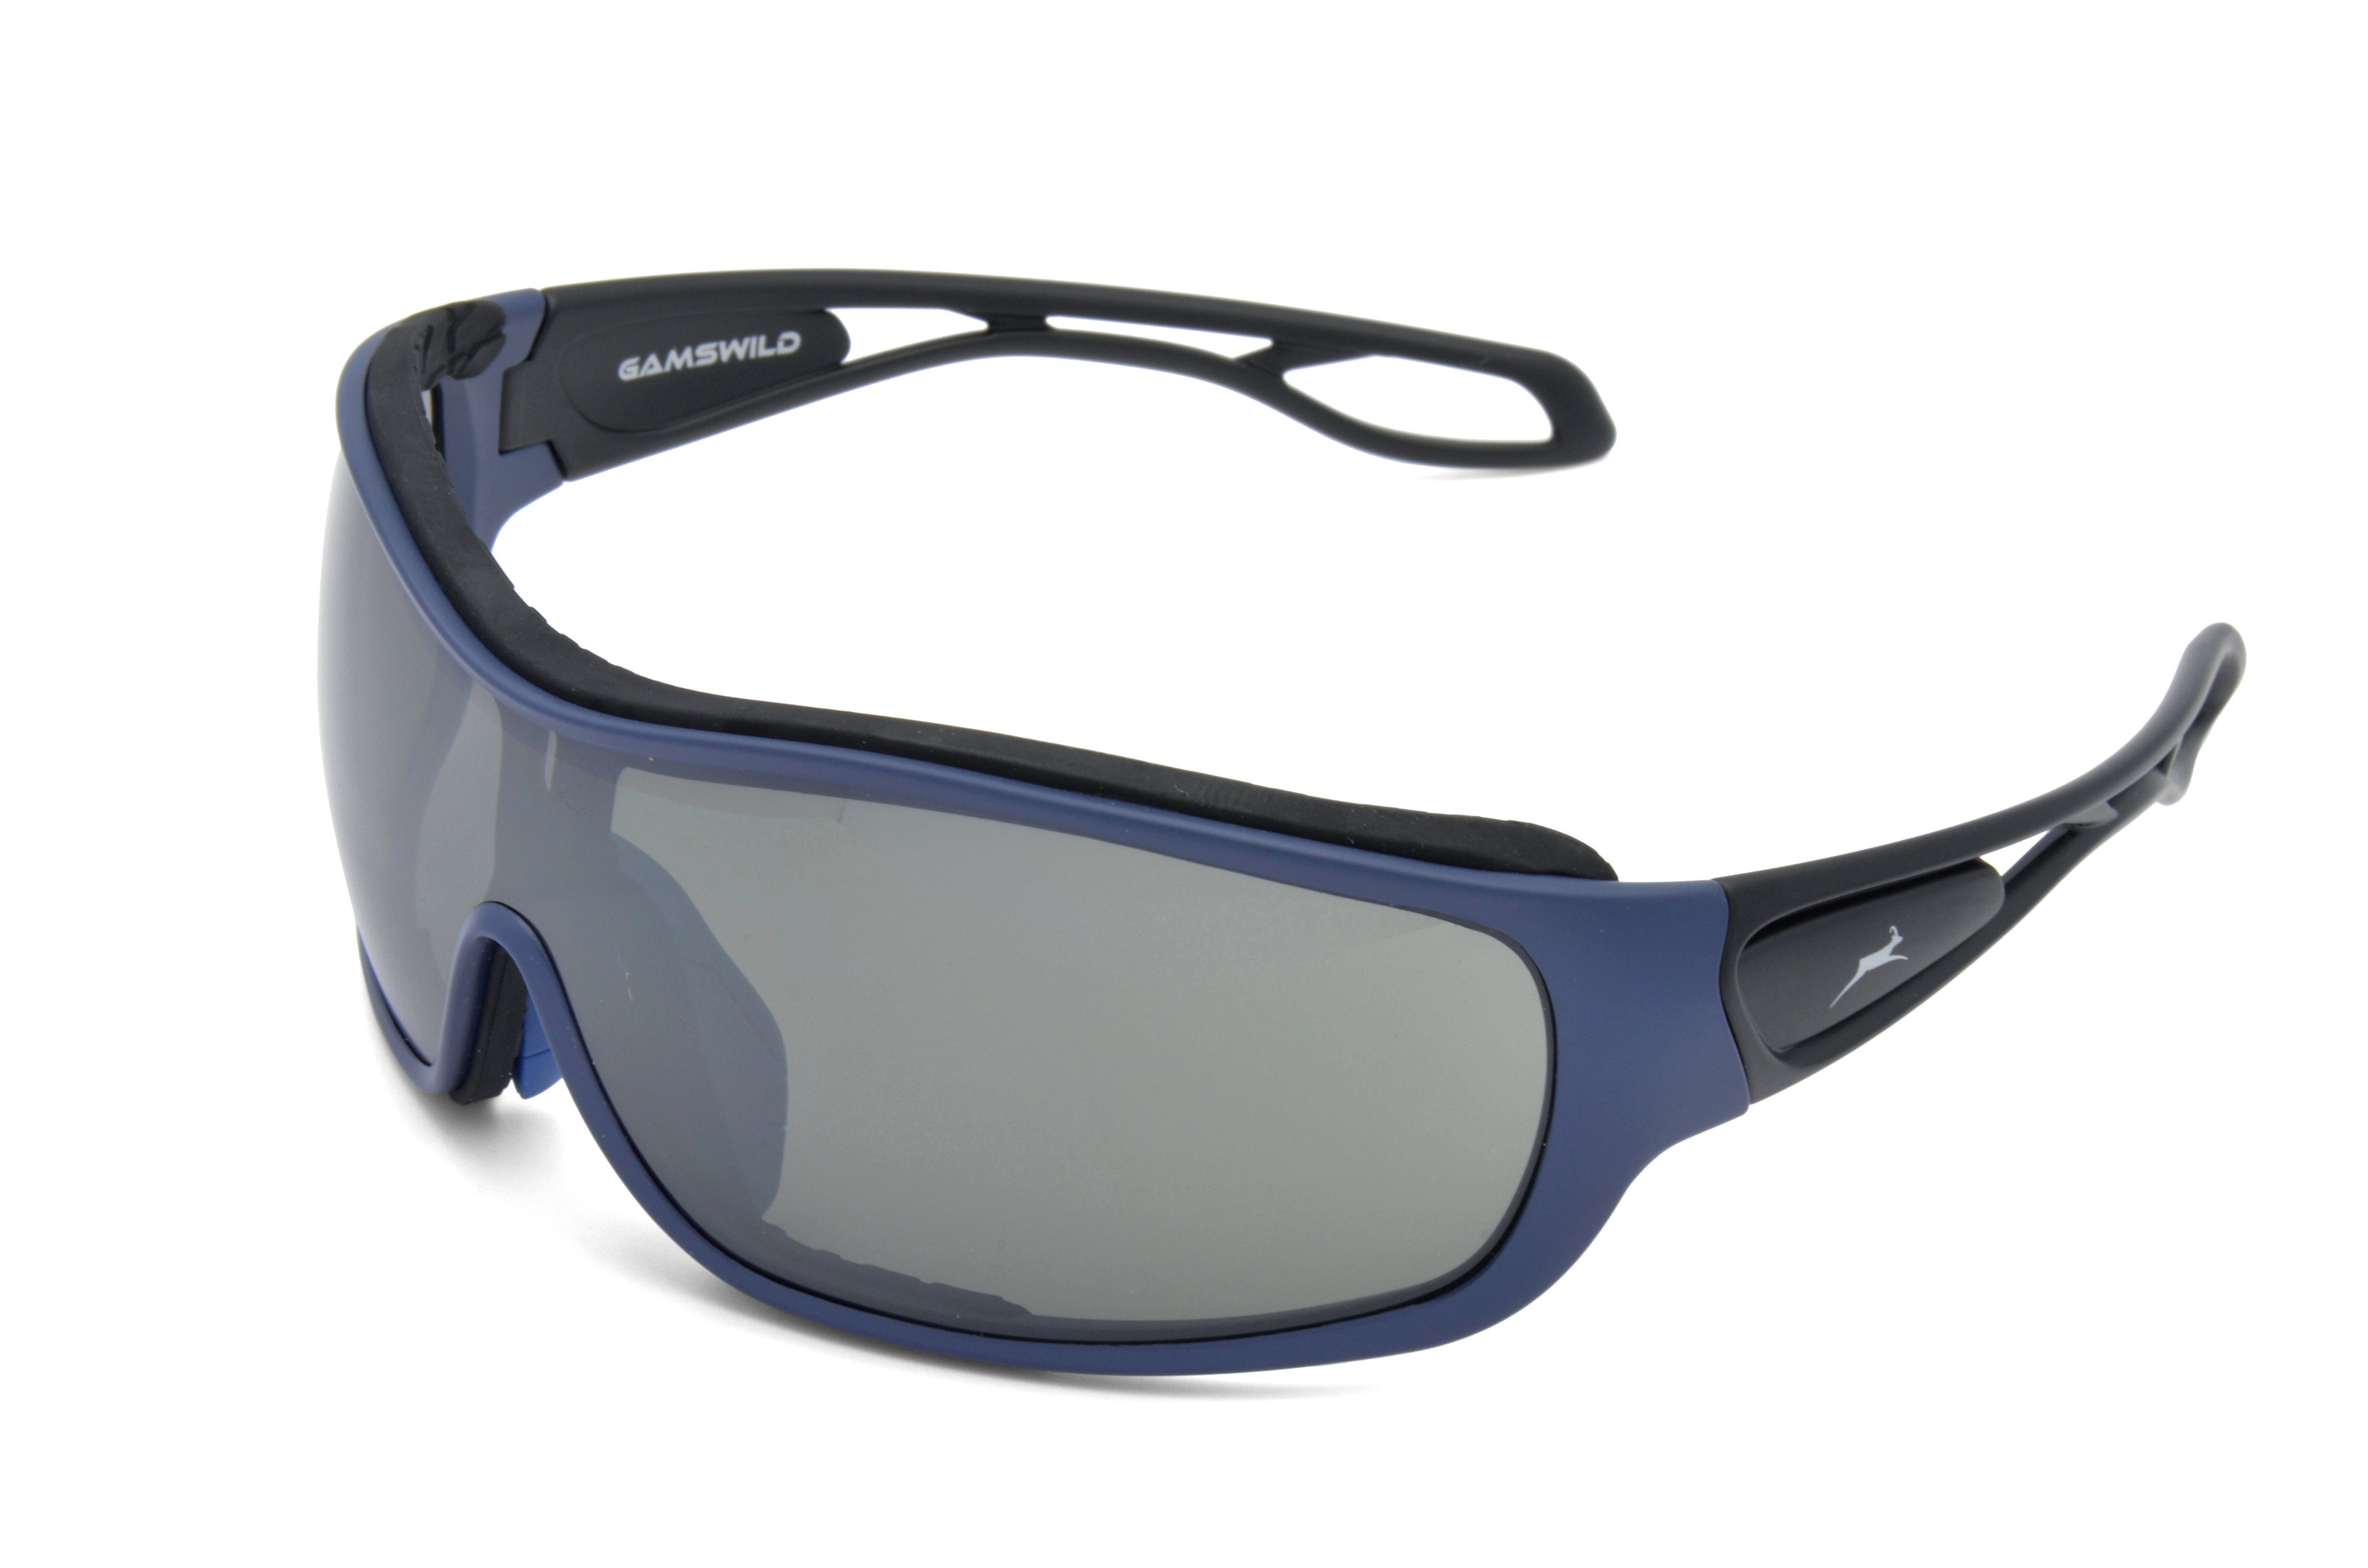 Gamswild Sportbrille »WS3332 Sonnenbrille Damen Herren Fahrradbrille  Skibrille Unisex, blau, rot, weiß«, Einscheibenmodell online kaufen | OTTO